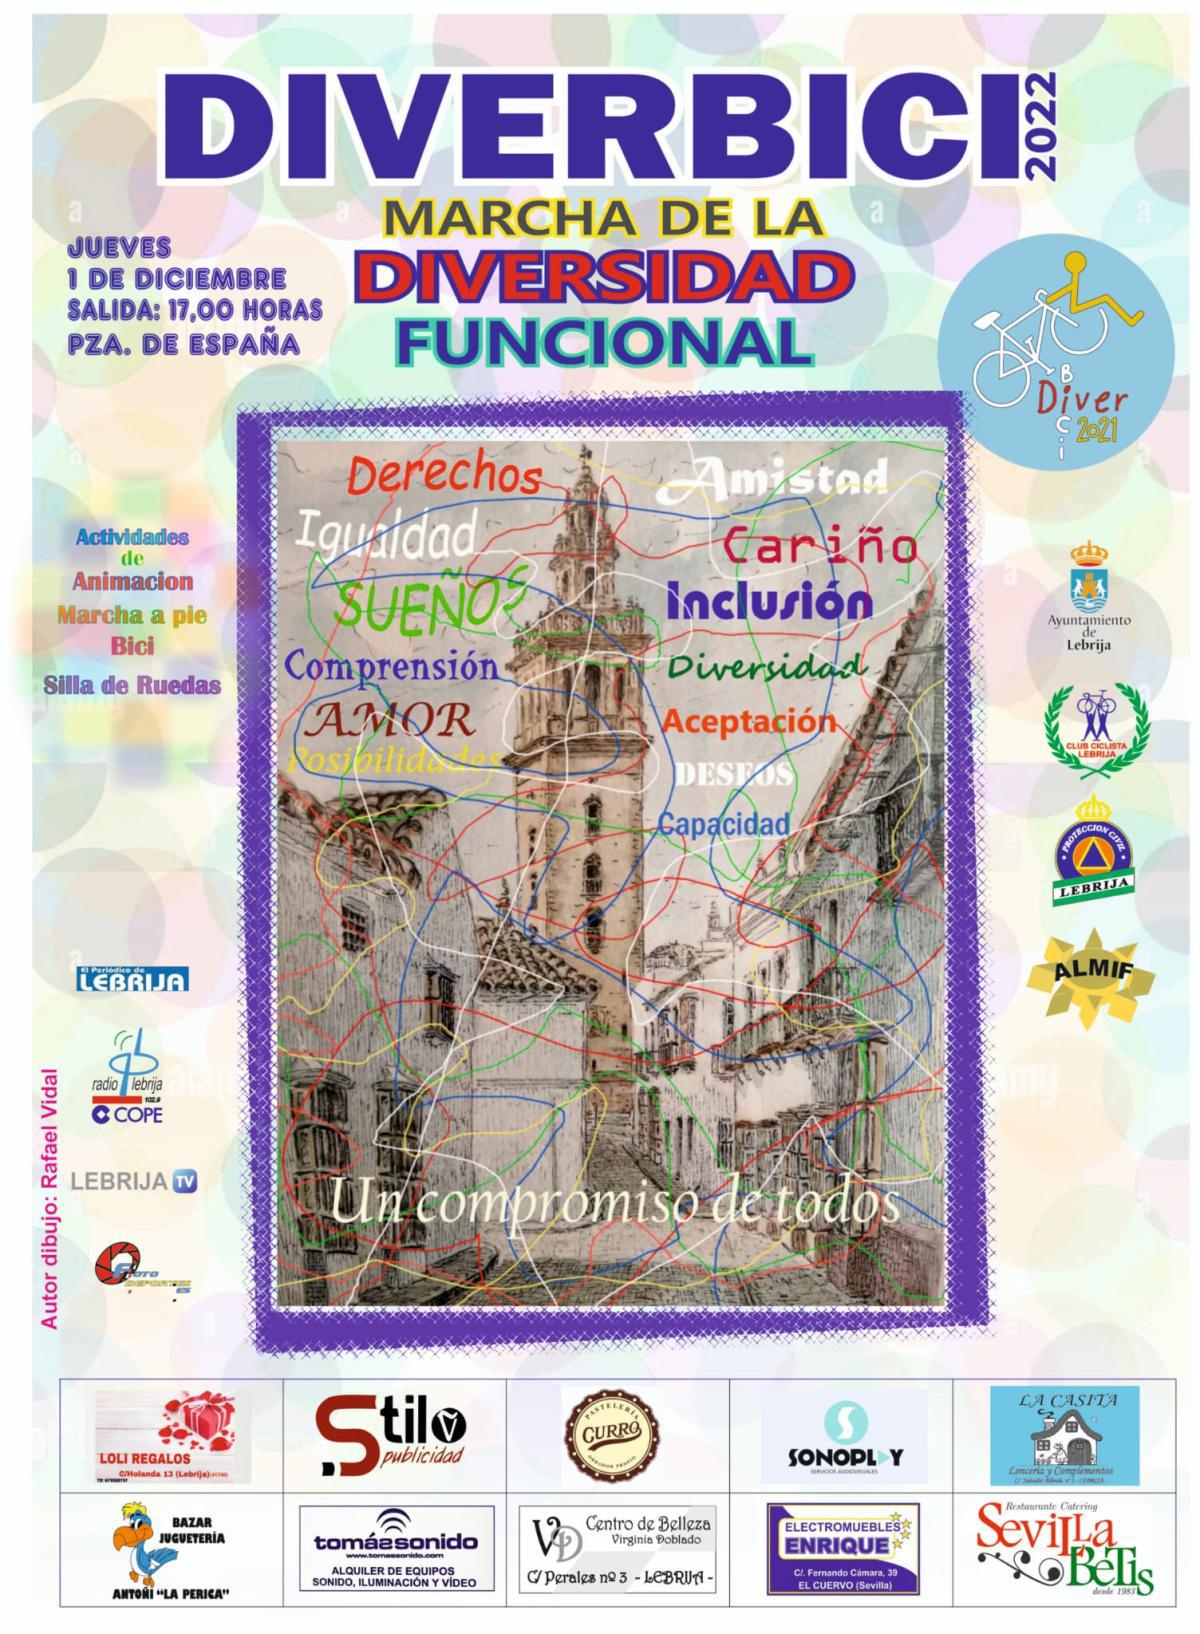 El próximo 1 de diciembre se celebrará una nueva edición del tradicional Diverbici